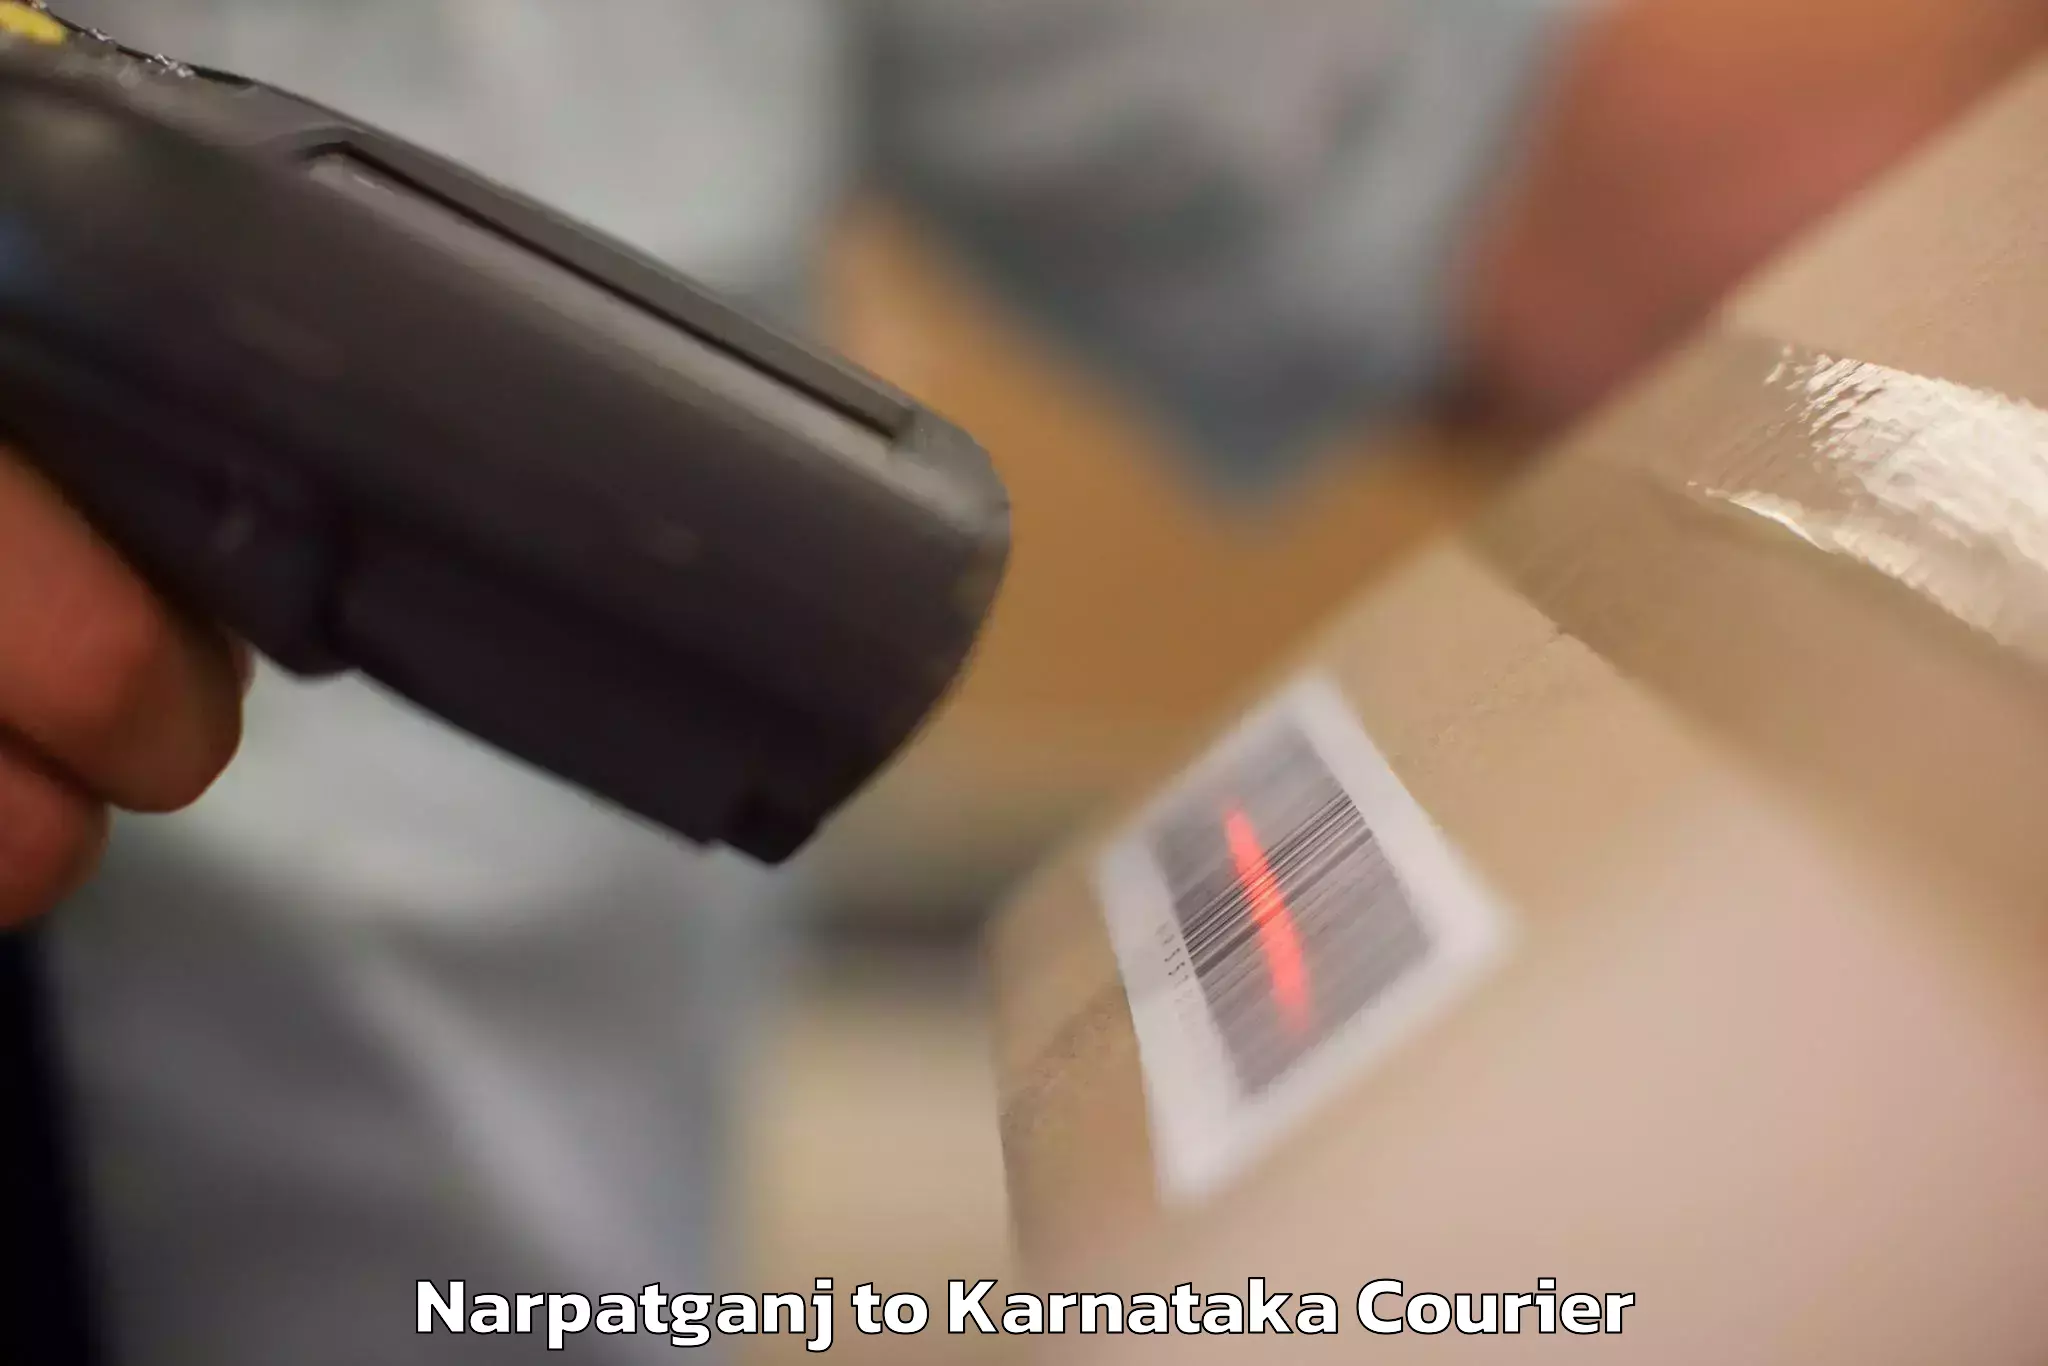 Luggage shipment tracking Narpatganj to Karnataka